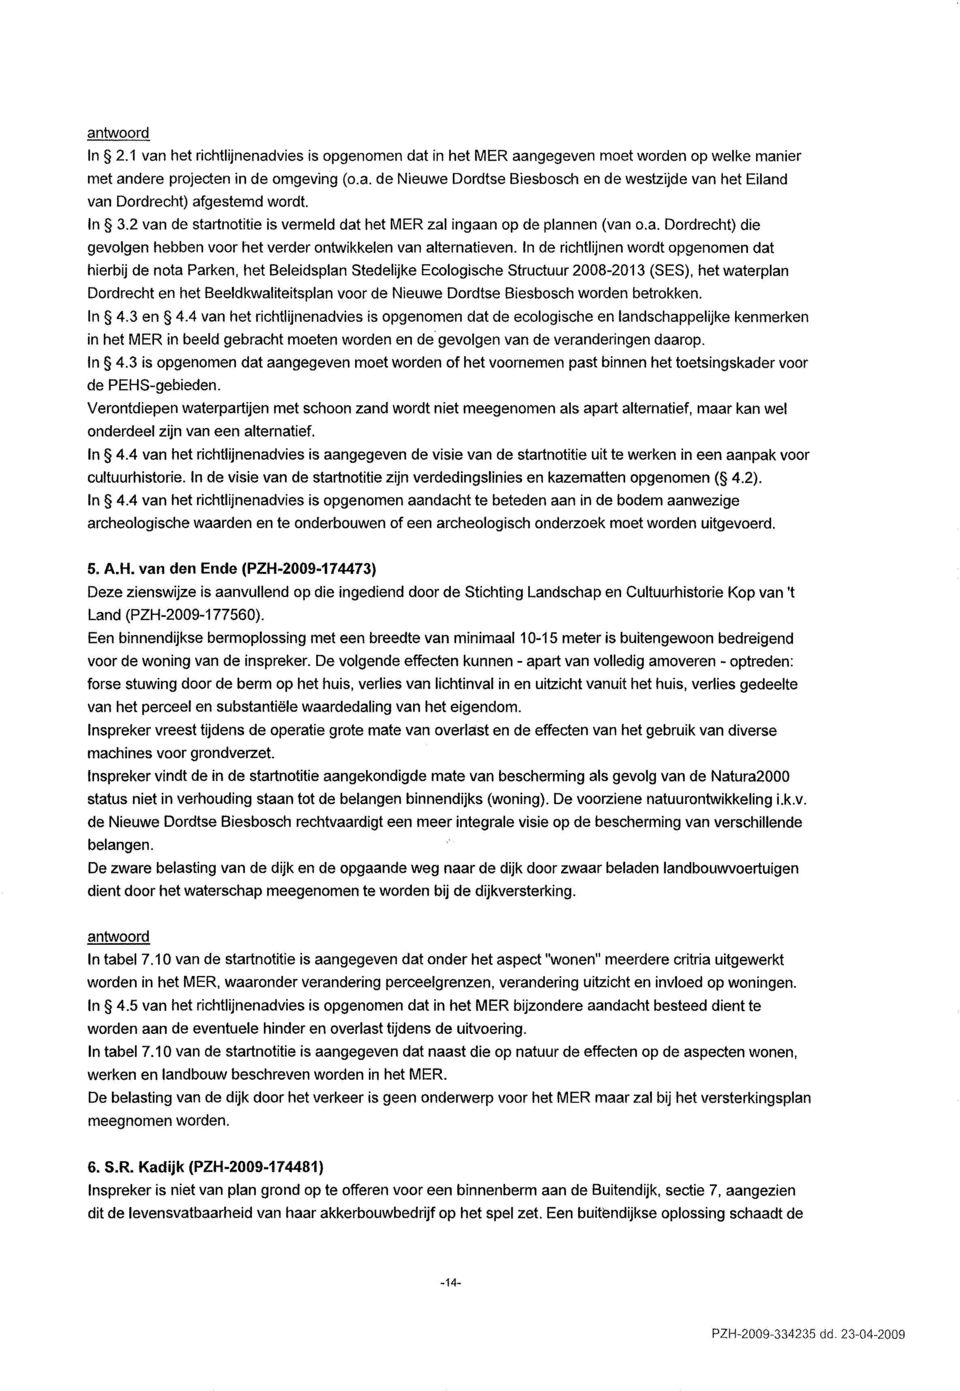 In de richtlijnen wordt opgenomen dat hierbij de nota Parken, het Beleidsplan Stedelijke Ecologische Structuur 2008-2013 (SES), het waterplan Dordrecht en het Beeldkwaliteitsplan voor de Nieuwe